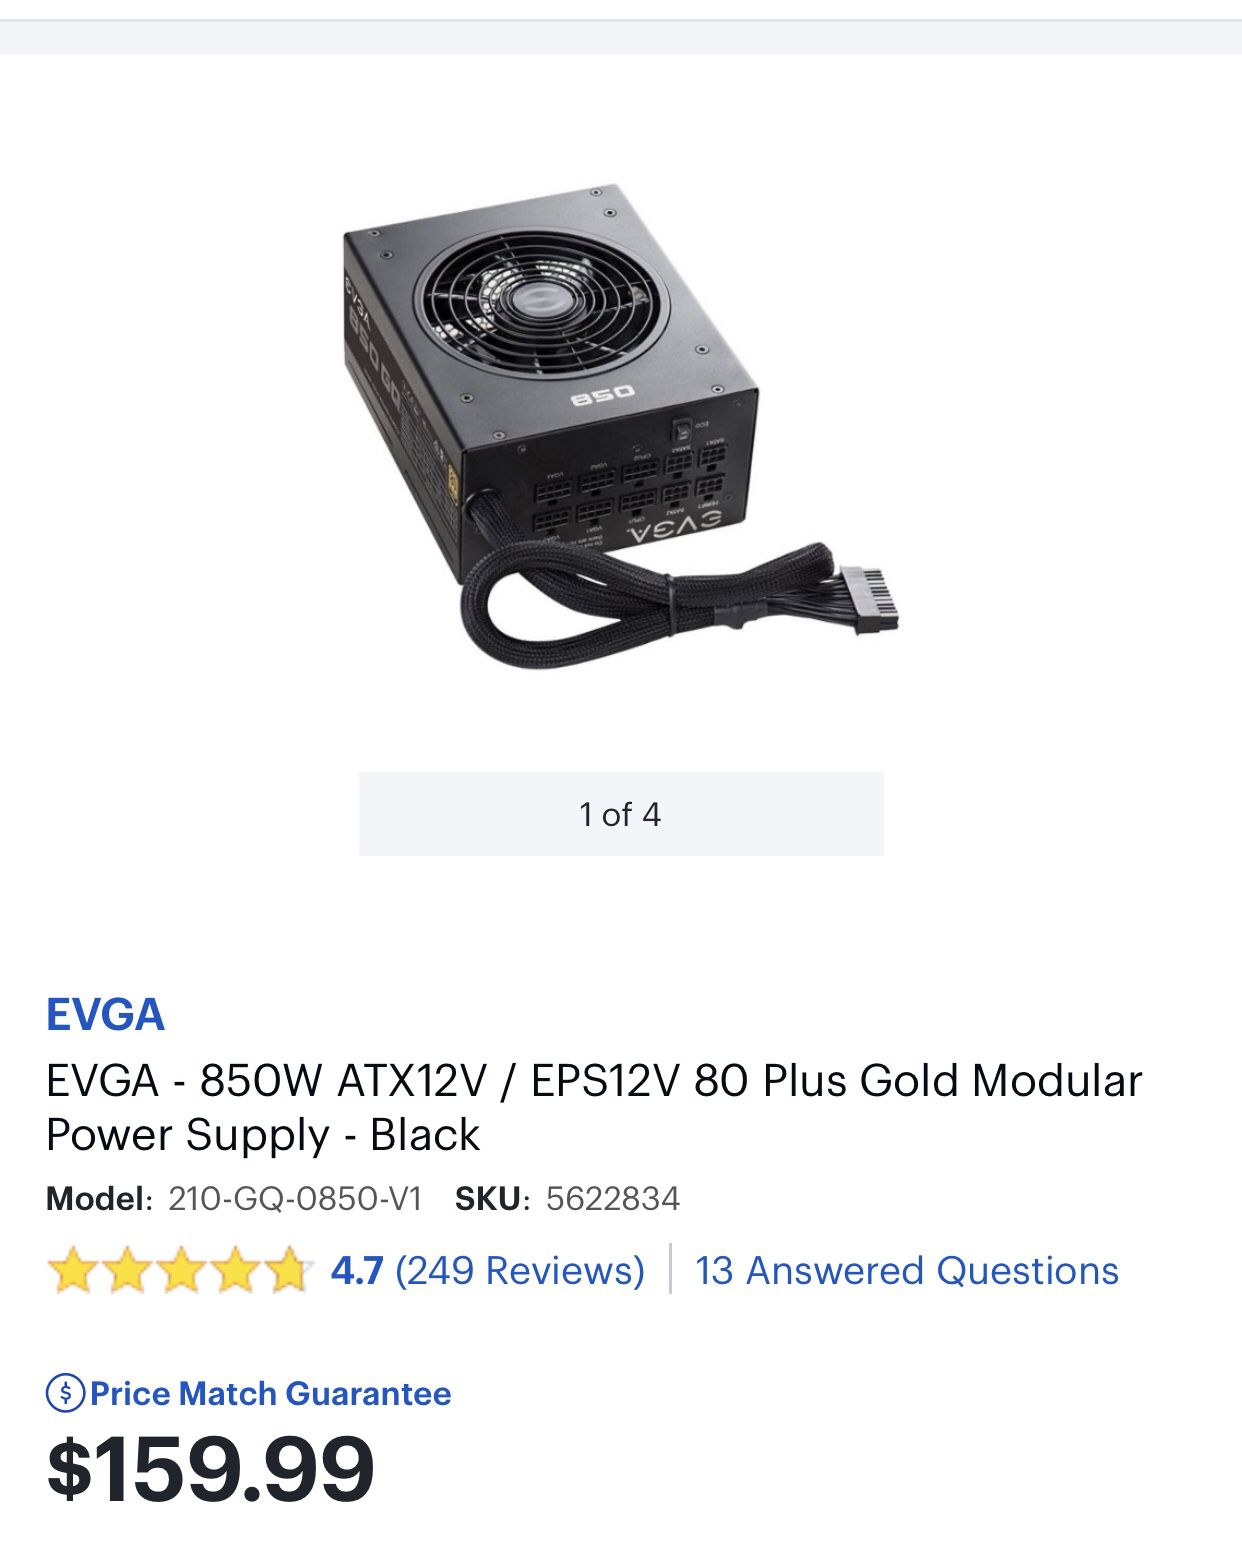 EVGA - 850W ATX12V / EPS12V 80 Plus Gold Modular Power Supply - Black